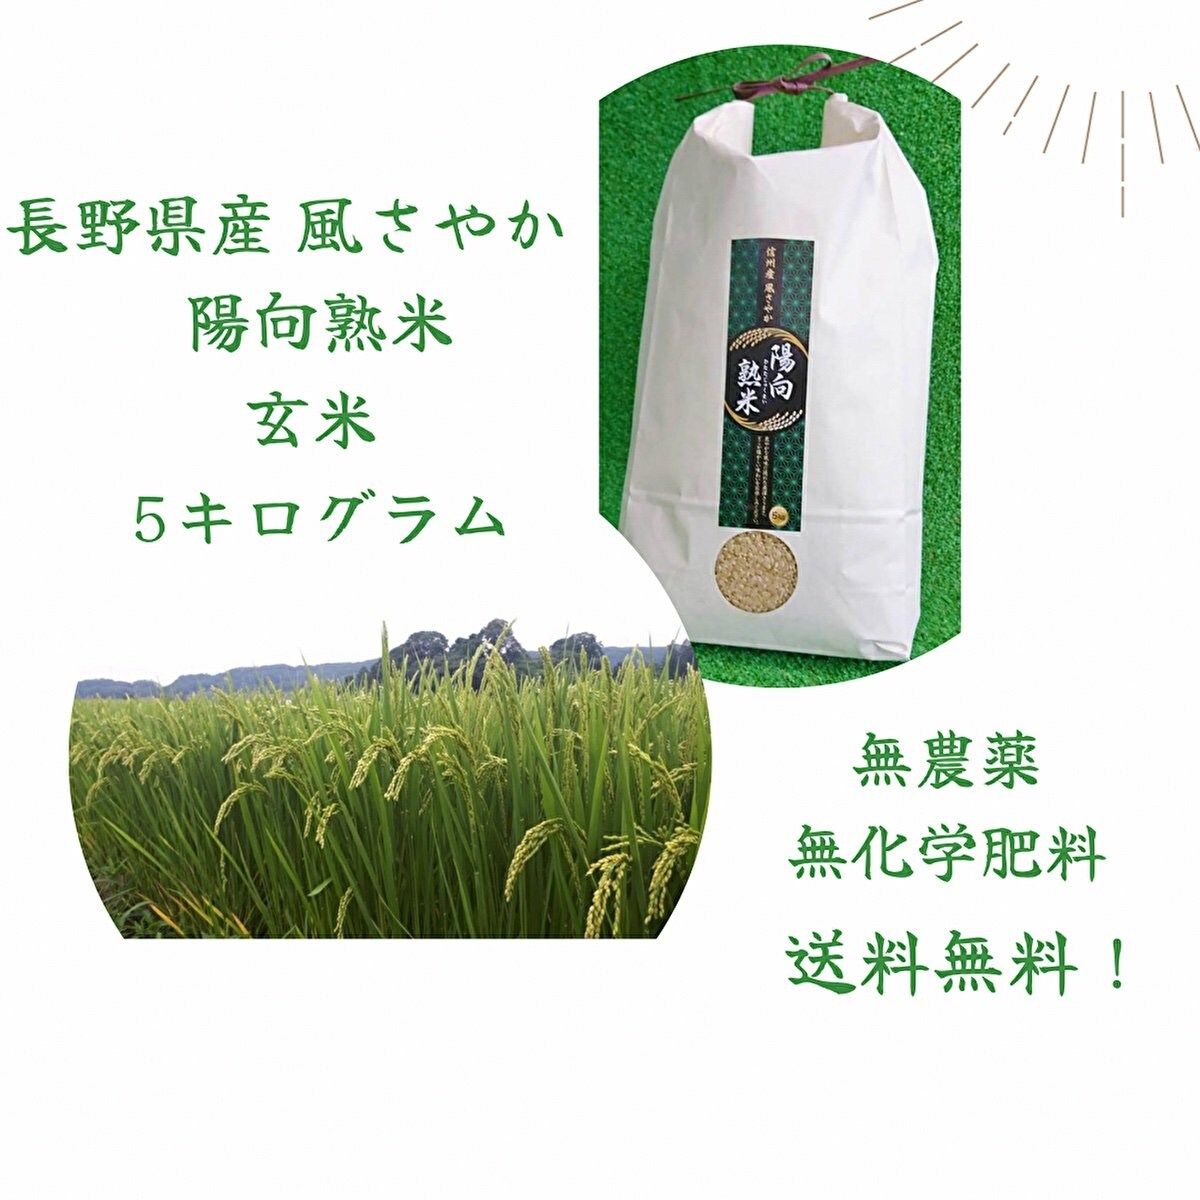 売れてます！  送料無料！ 長野県発の農薬・化学肥料不使用の玄米『風さやか陽向熟米5kg』